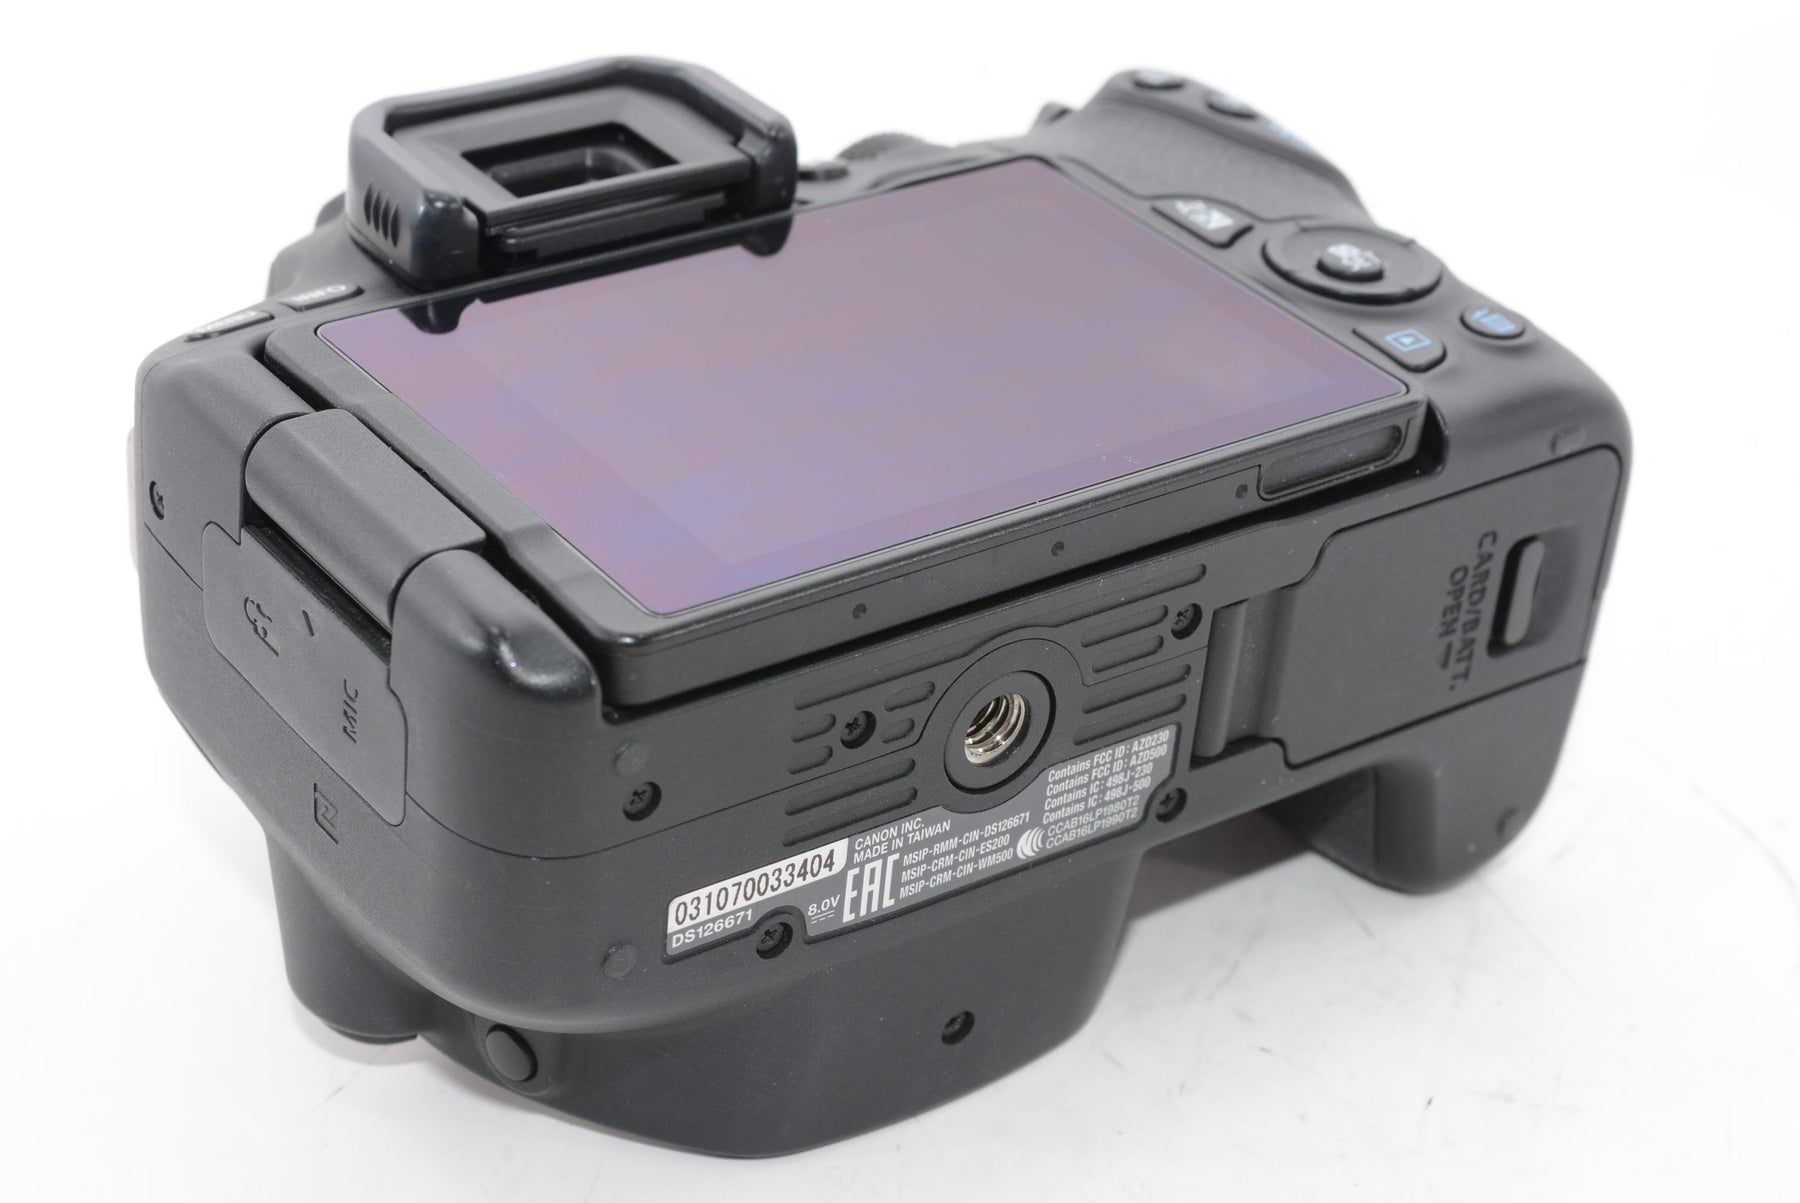 【外観特上級】Canon デジタル一眼レフカメラ EOS Kiss X9 EF-S18-55 IS STM レンズキット(ブラック) KISSX9BK1855F4ISSTML